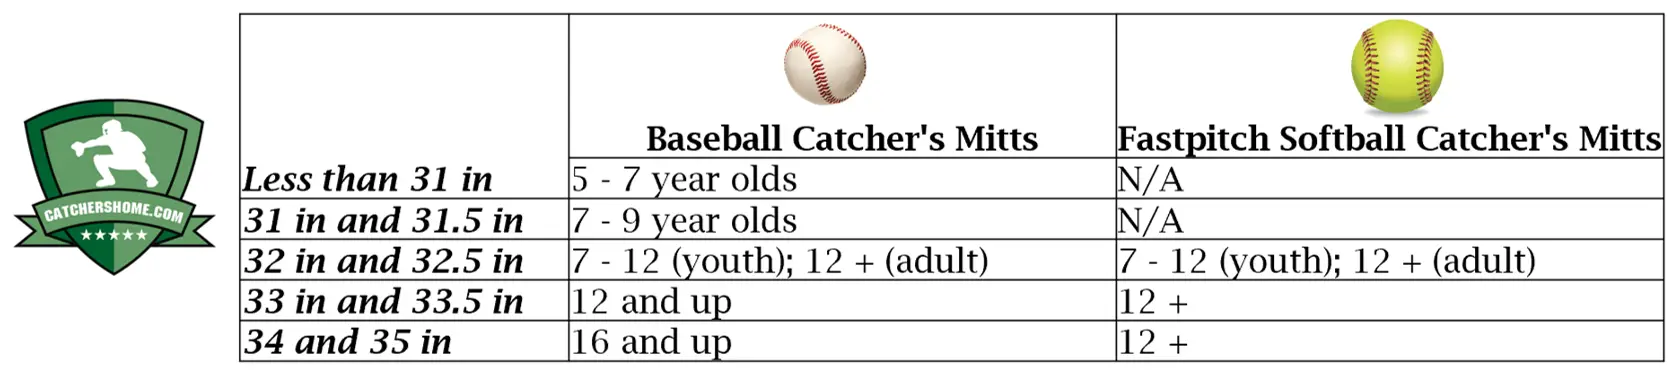 catchers mitt size chart